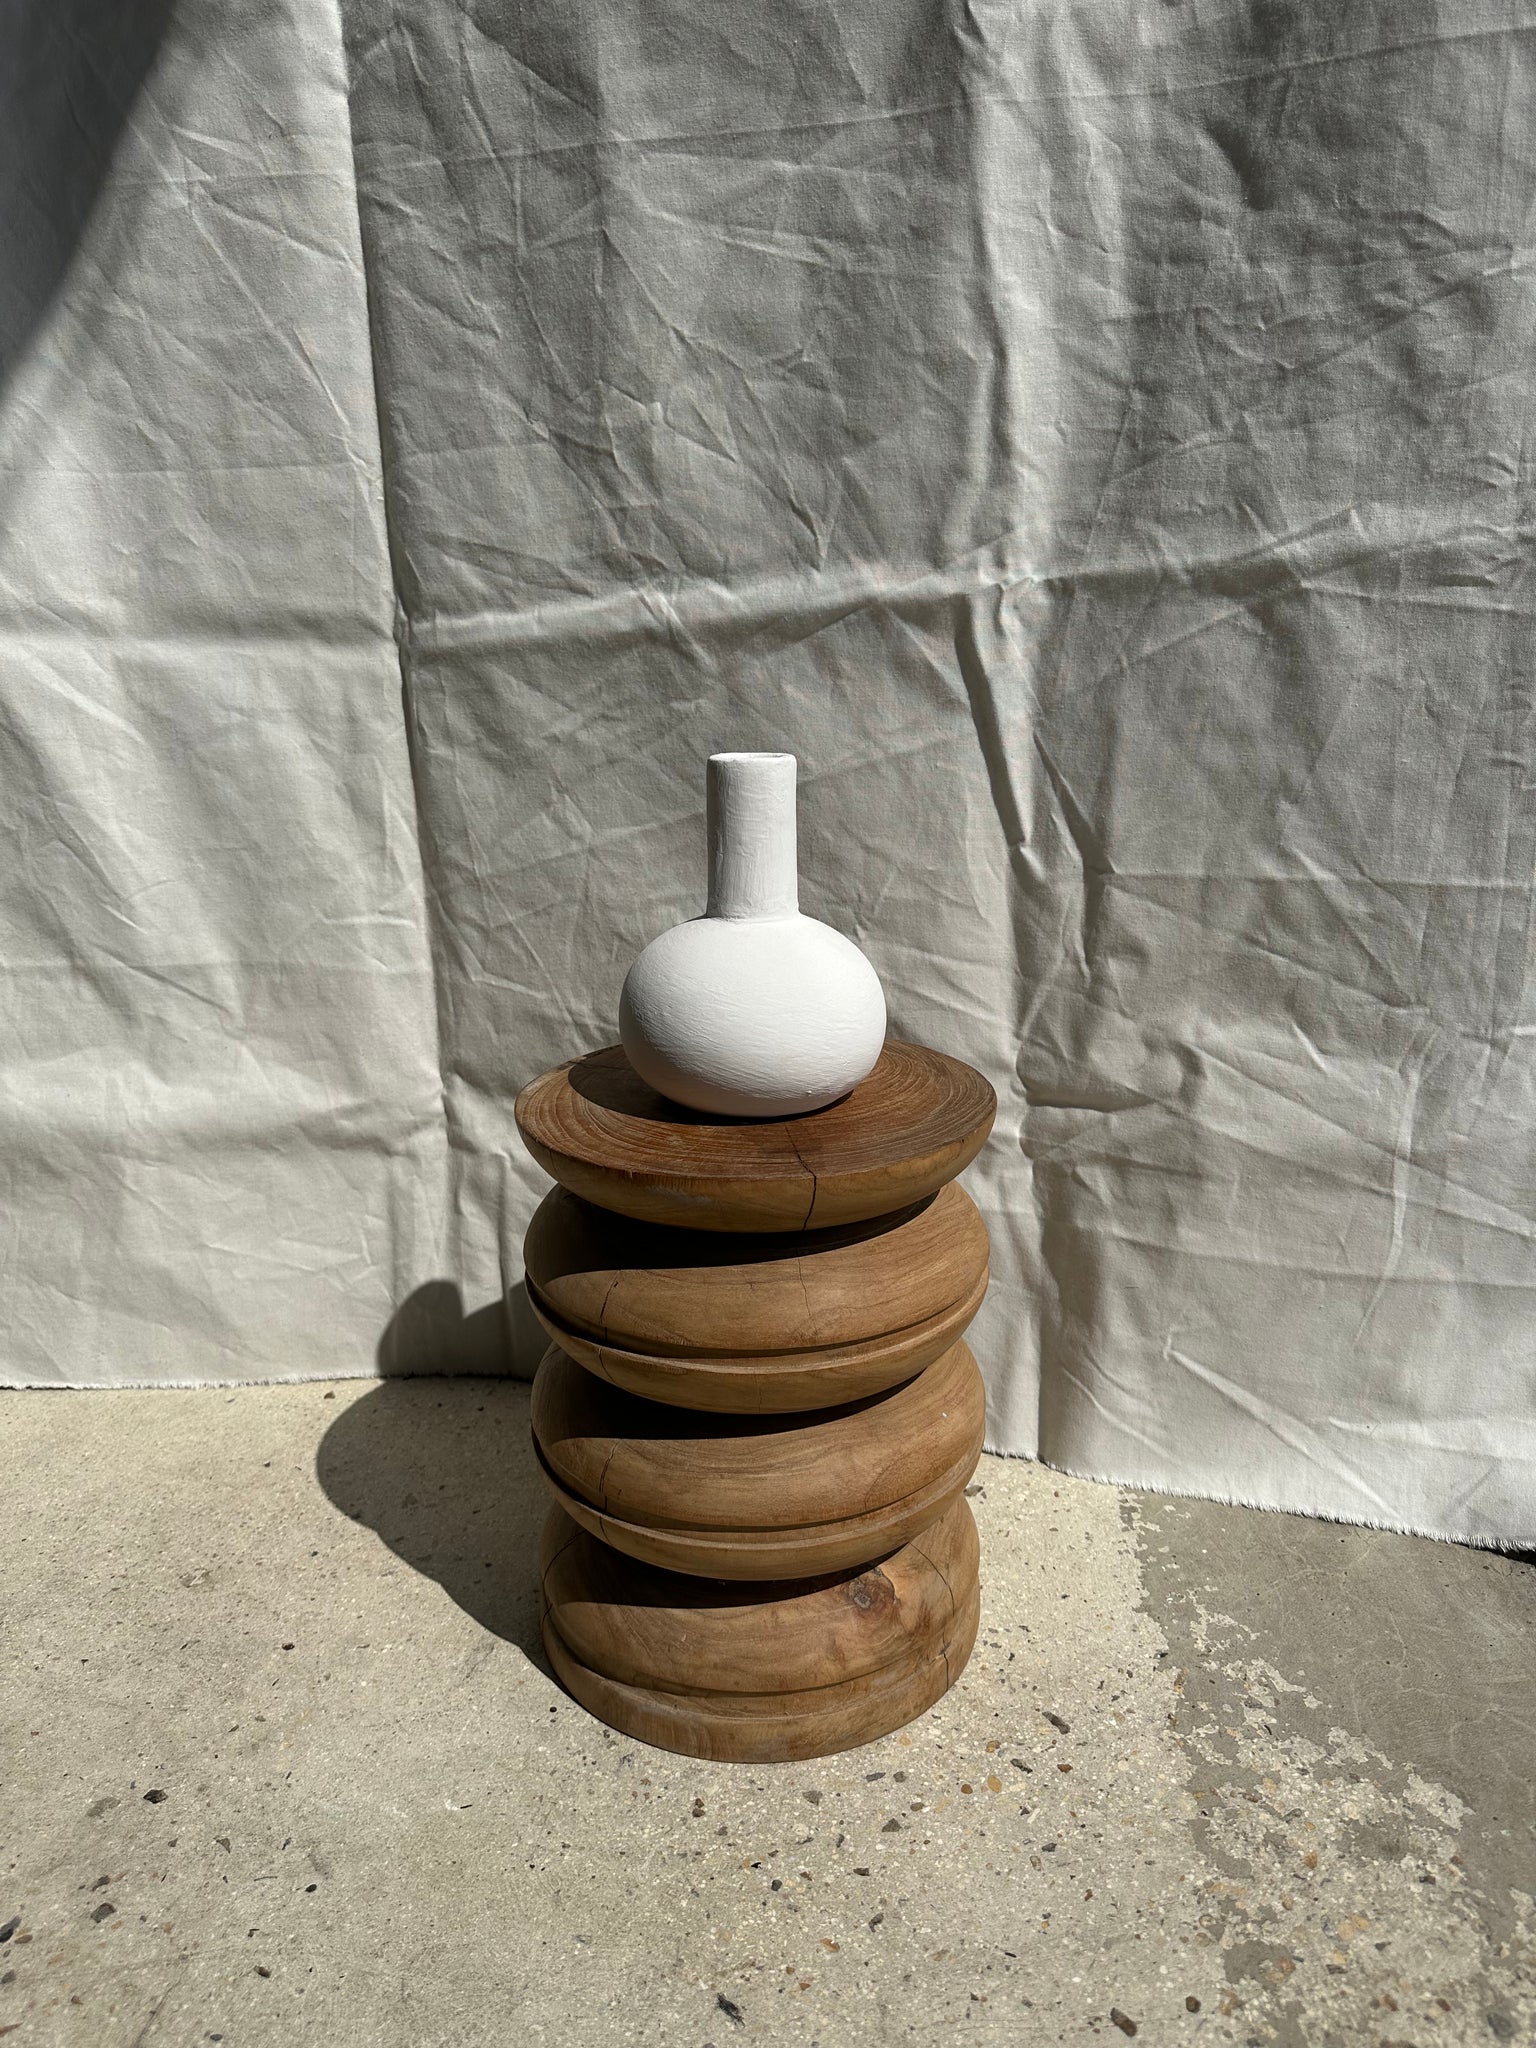 Petit vase soliflore goutte artisanal en terracotta peint en blanc H:20 D:15